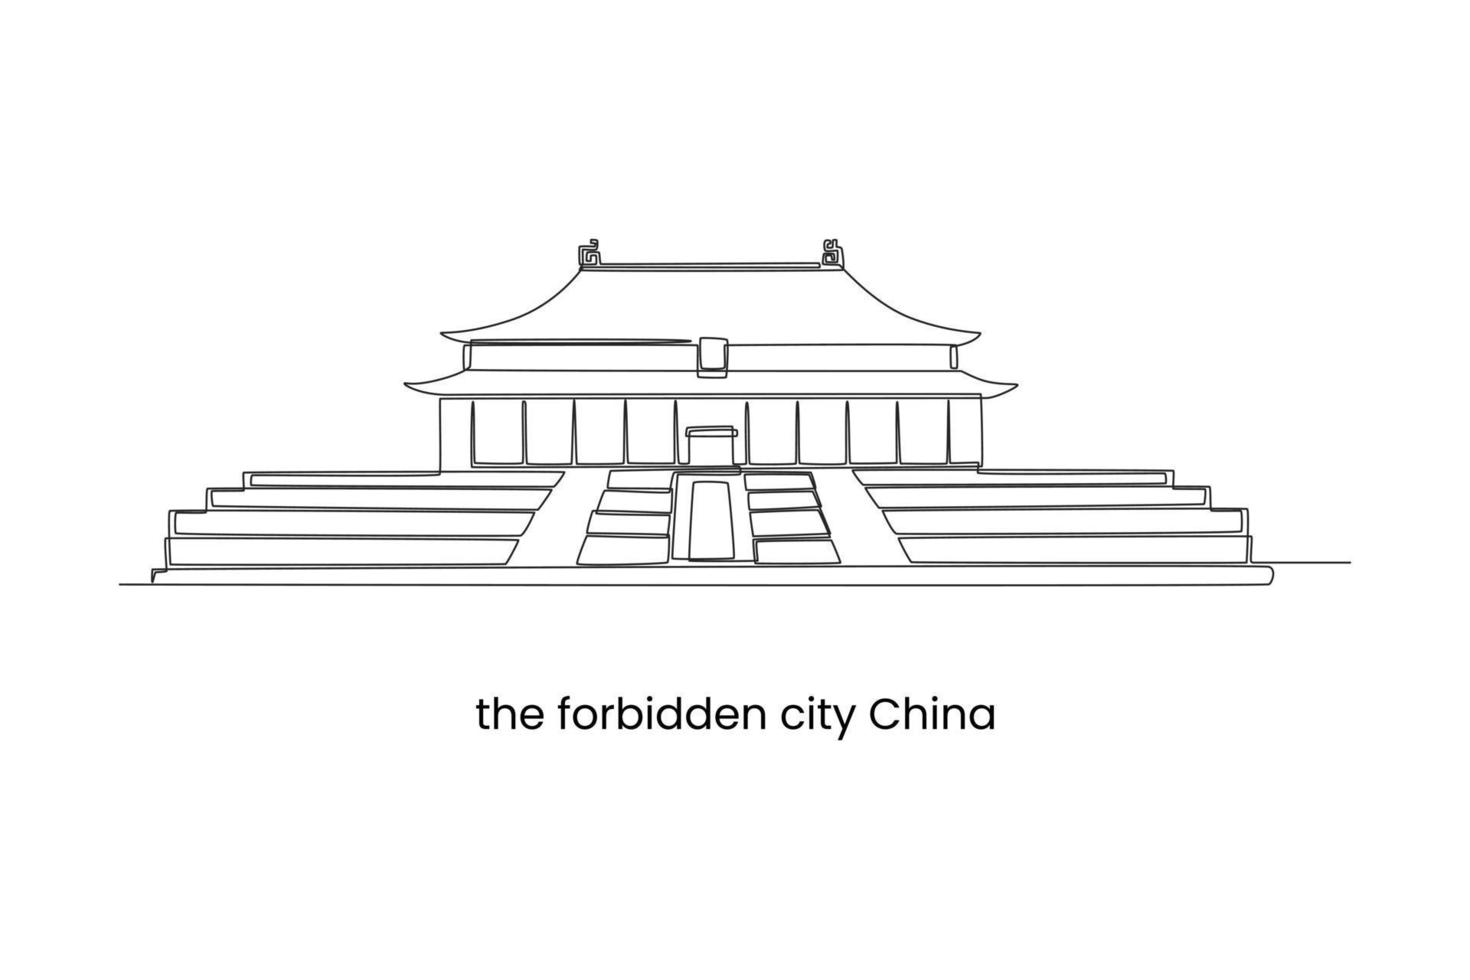 kontinuierliche eine linie, die die verbotene stadt in peking, china zeichnet. Landmarken-Konzept. einzeiliges zeichnen design vektorgrafik illustration. vektor